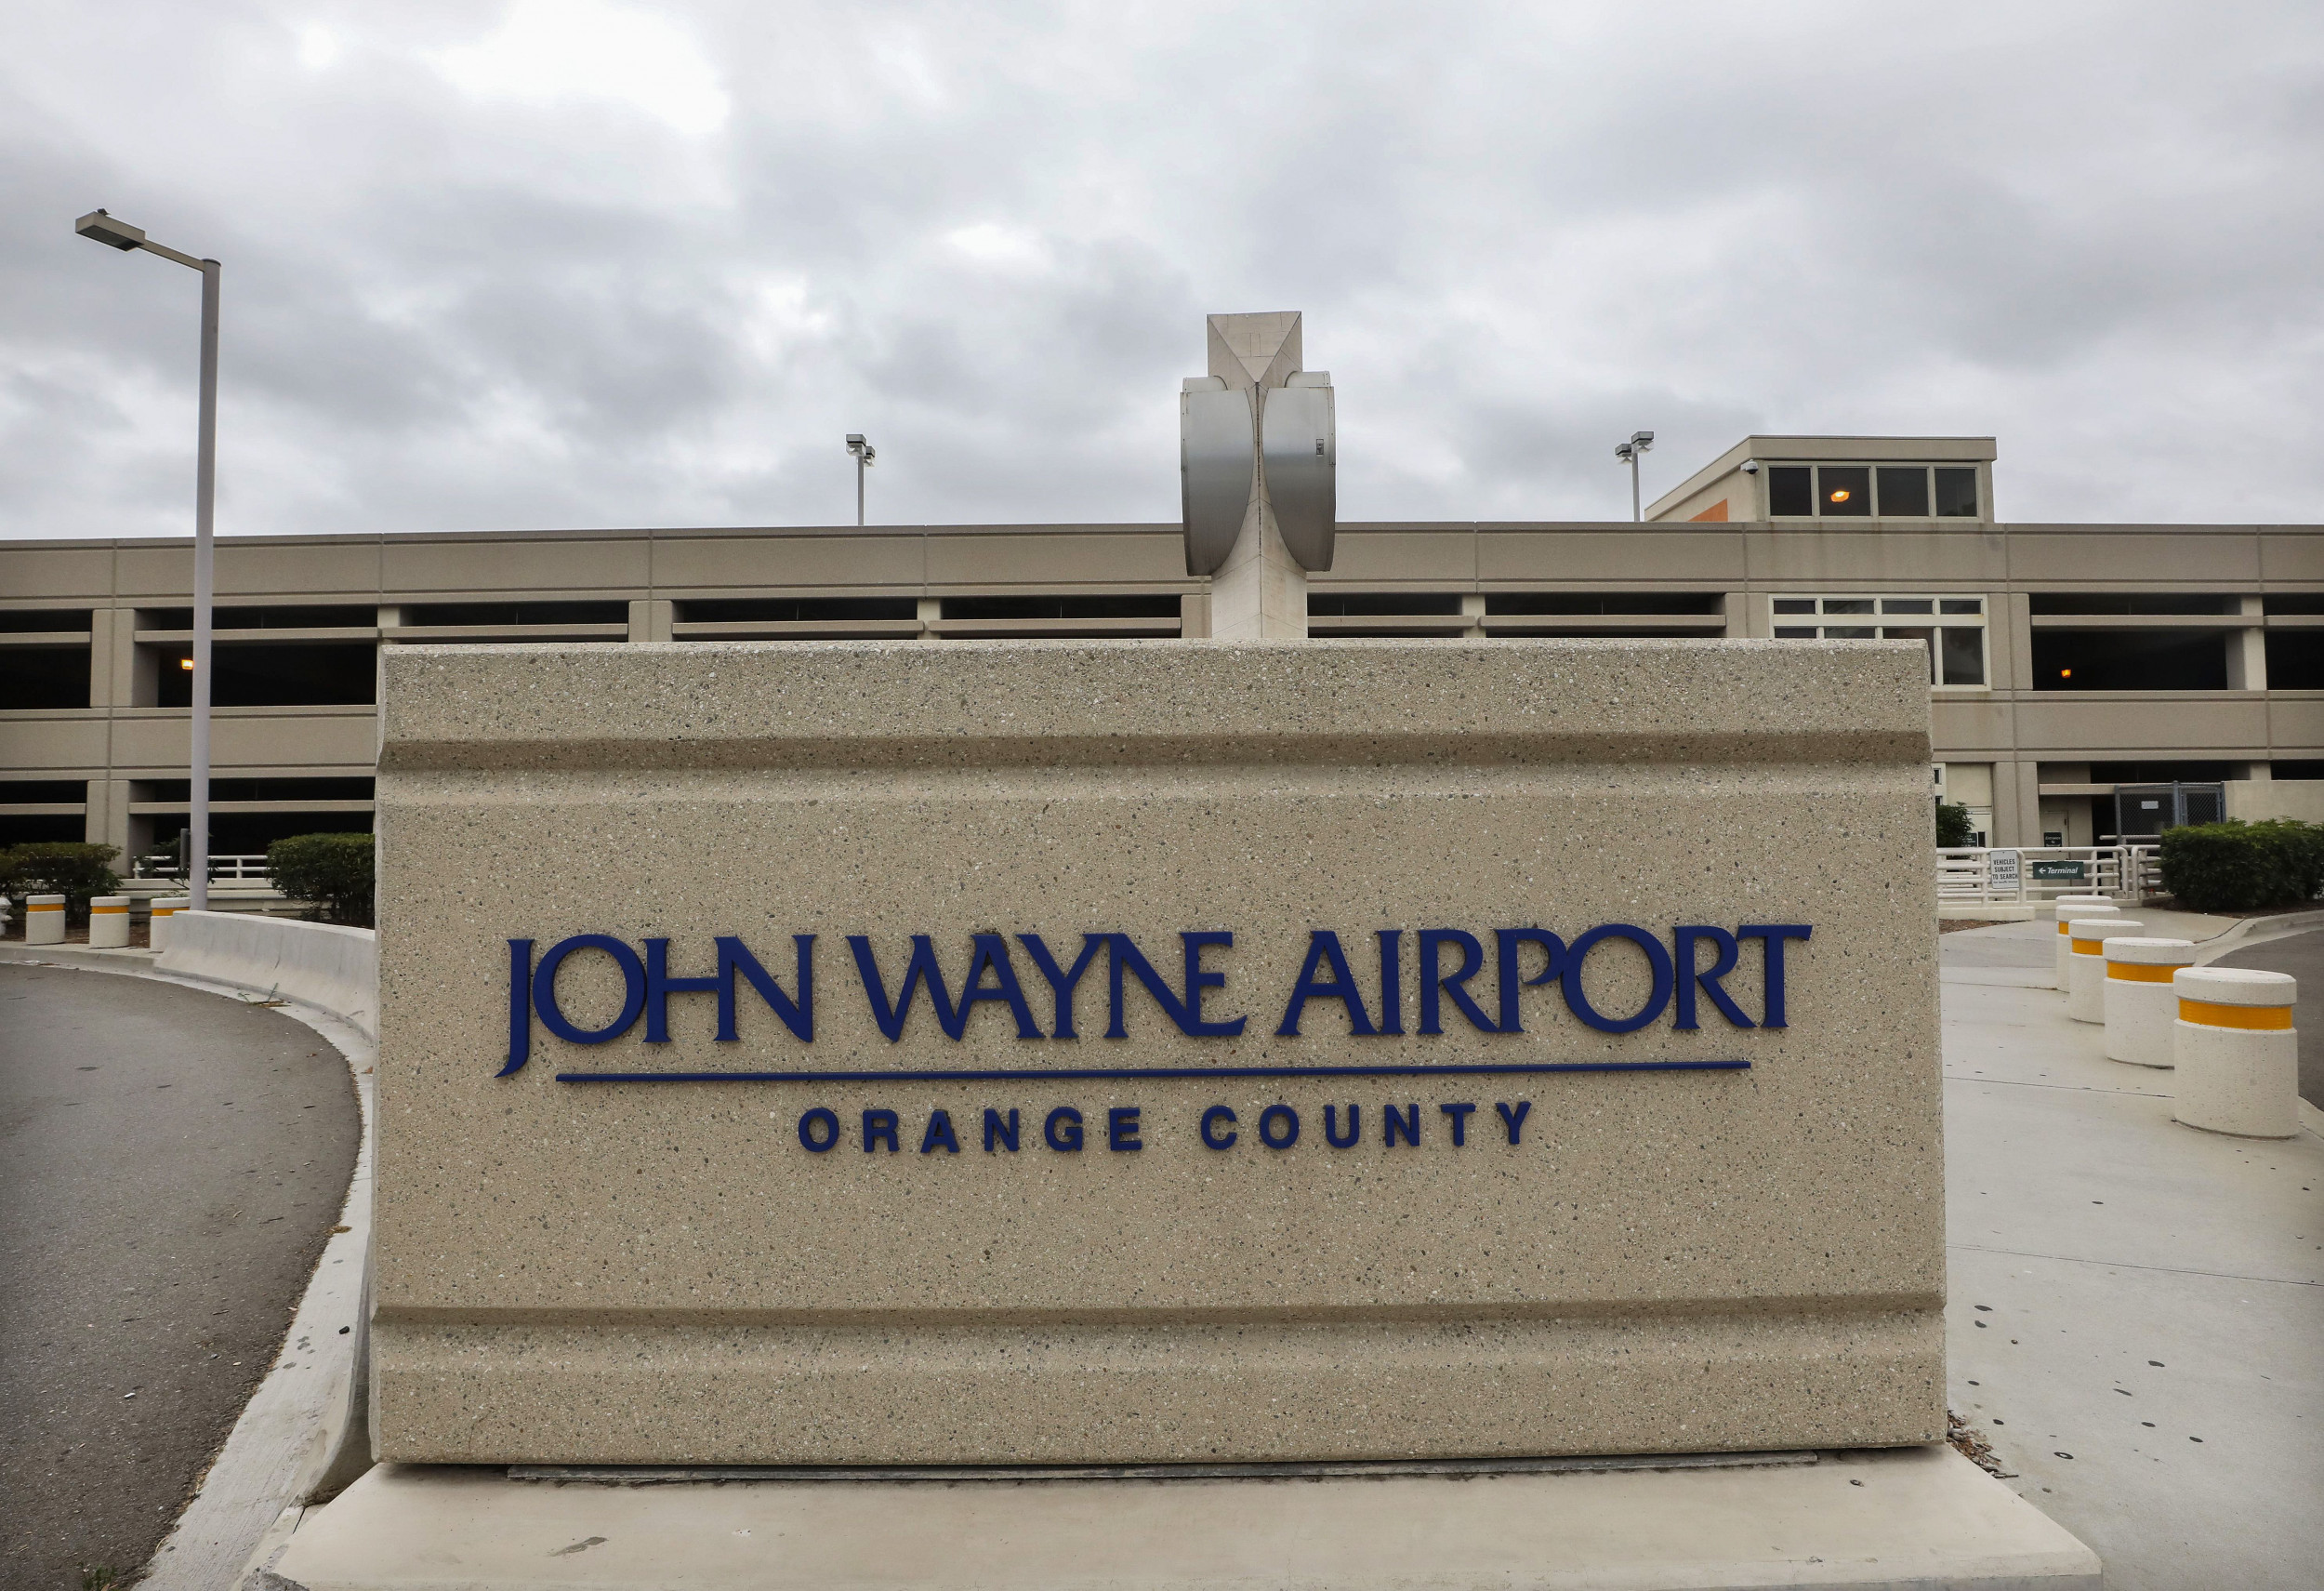 John wayne airport job openings